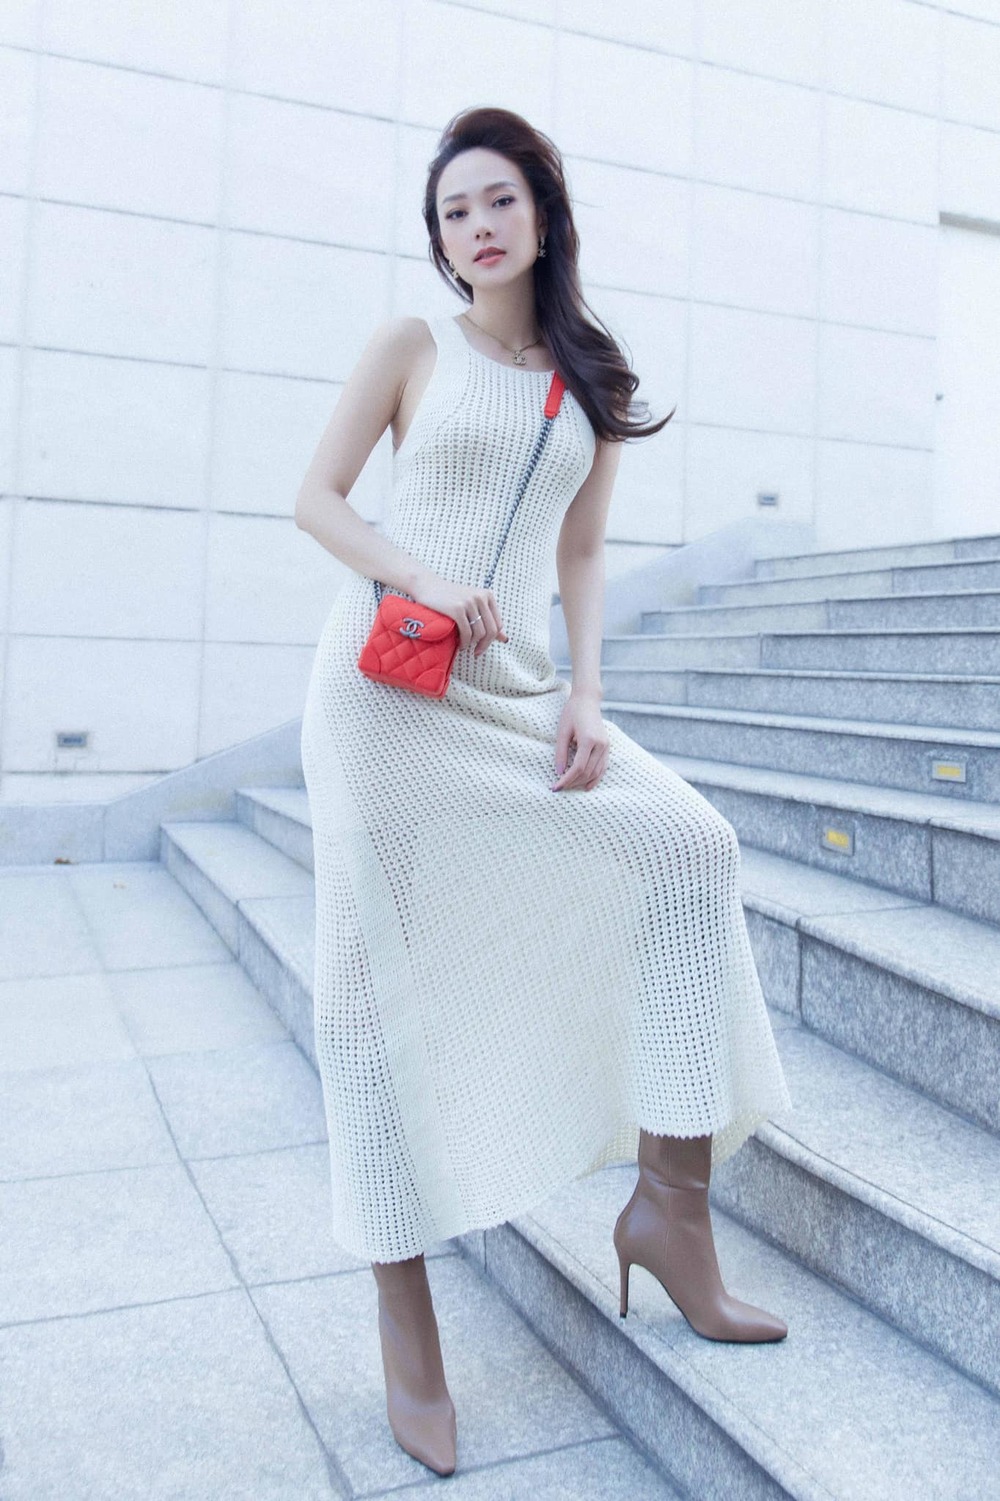  
Minh Hằng trở thành fashionista mới của Vbiz. (Ảnh: FBNV)